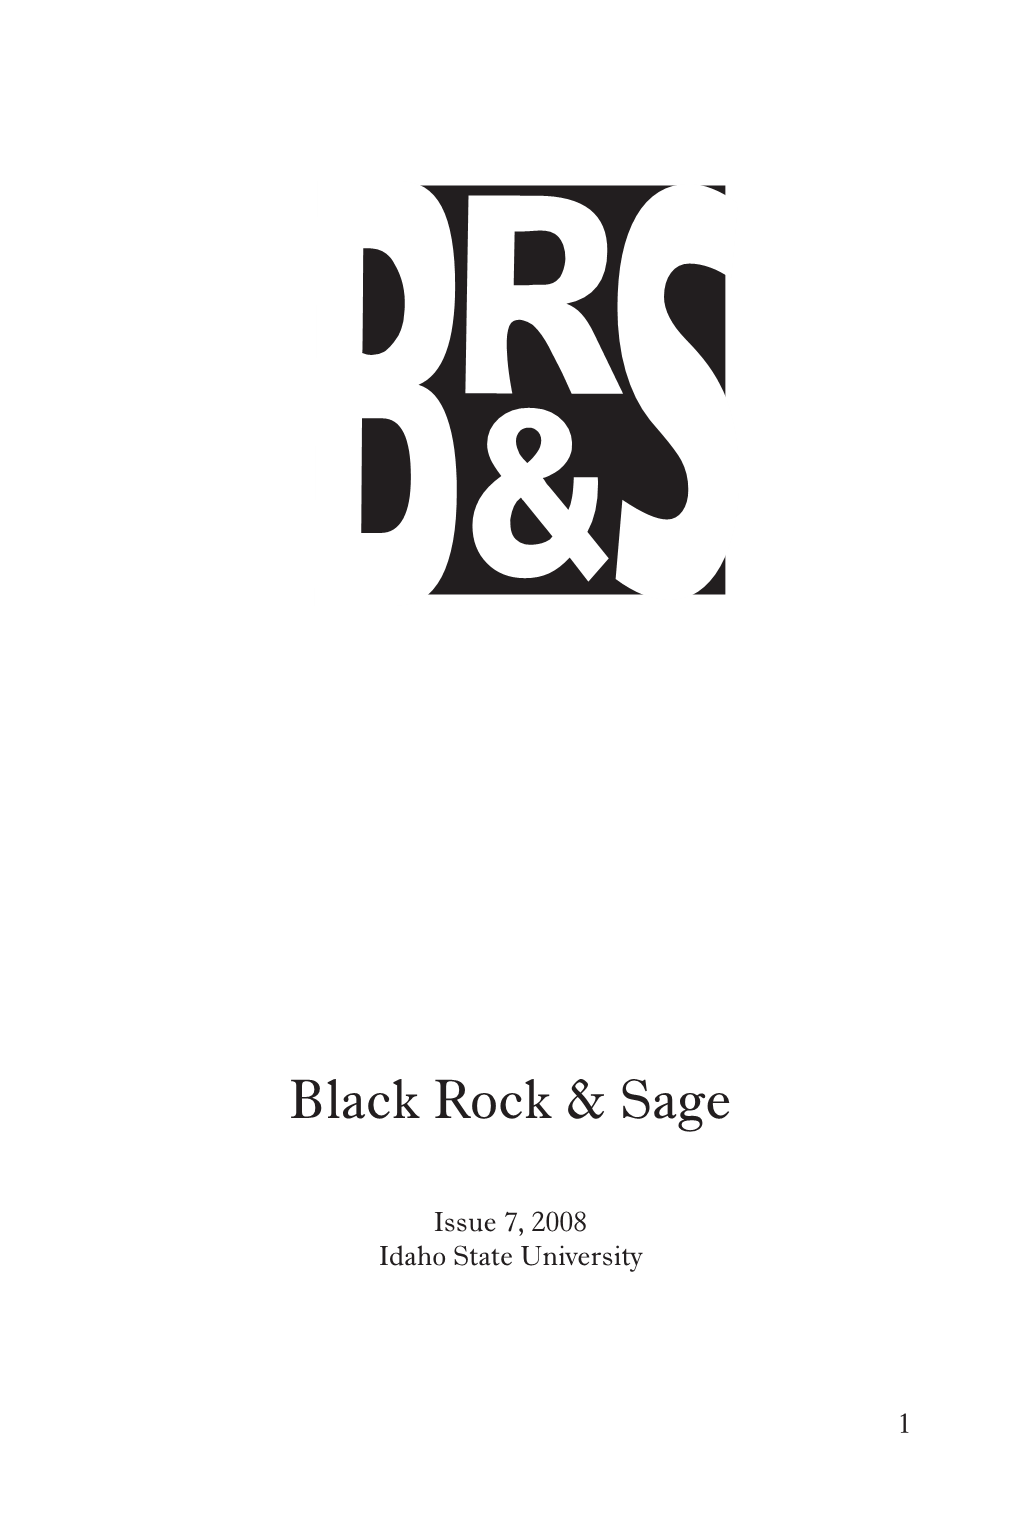 Black Rock & Sage